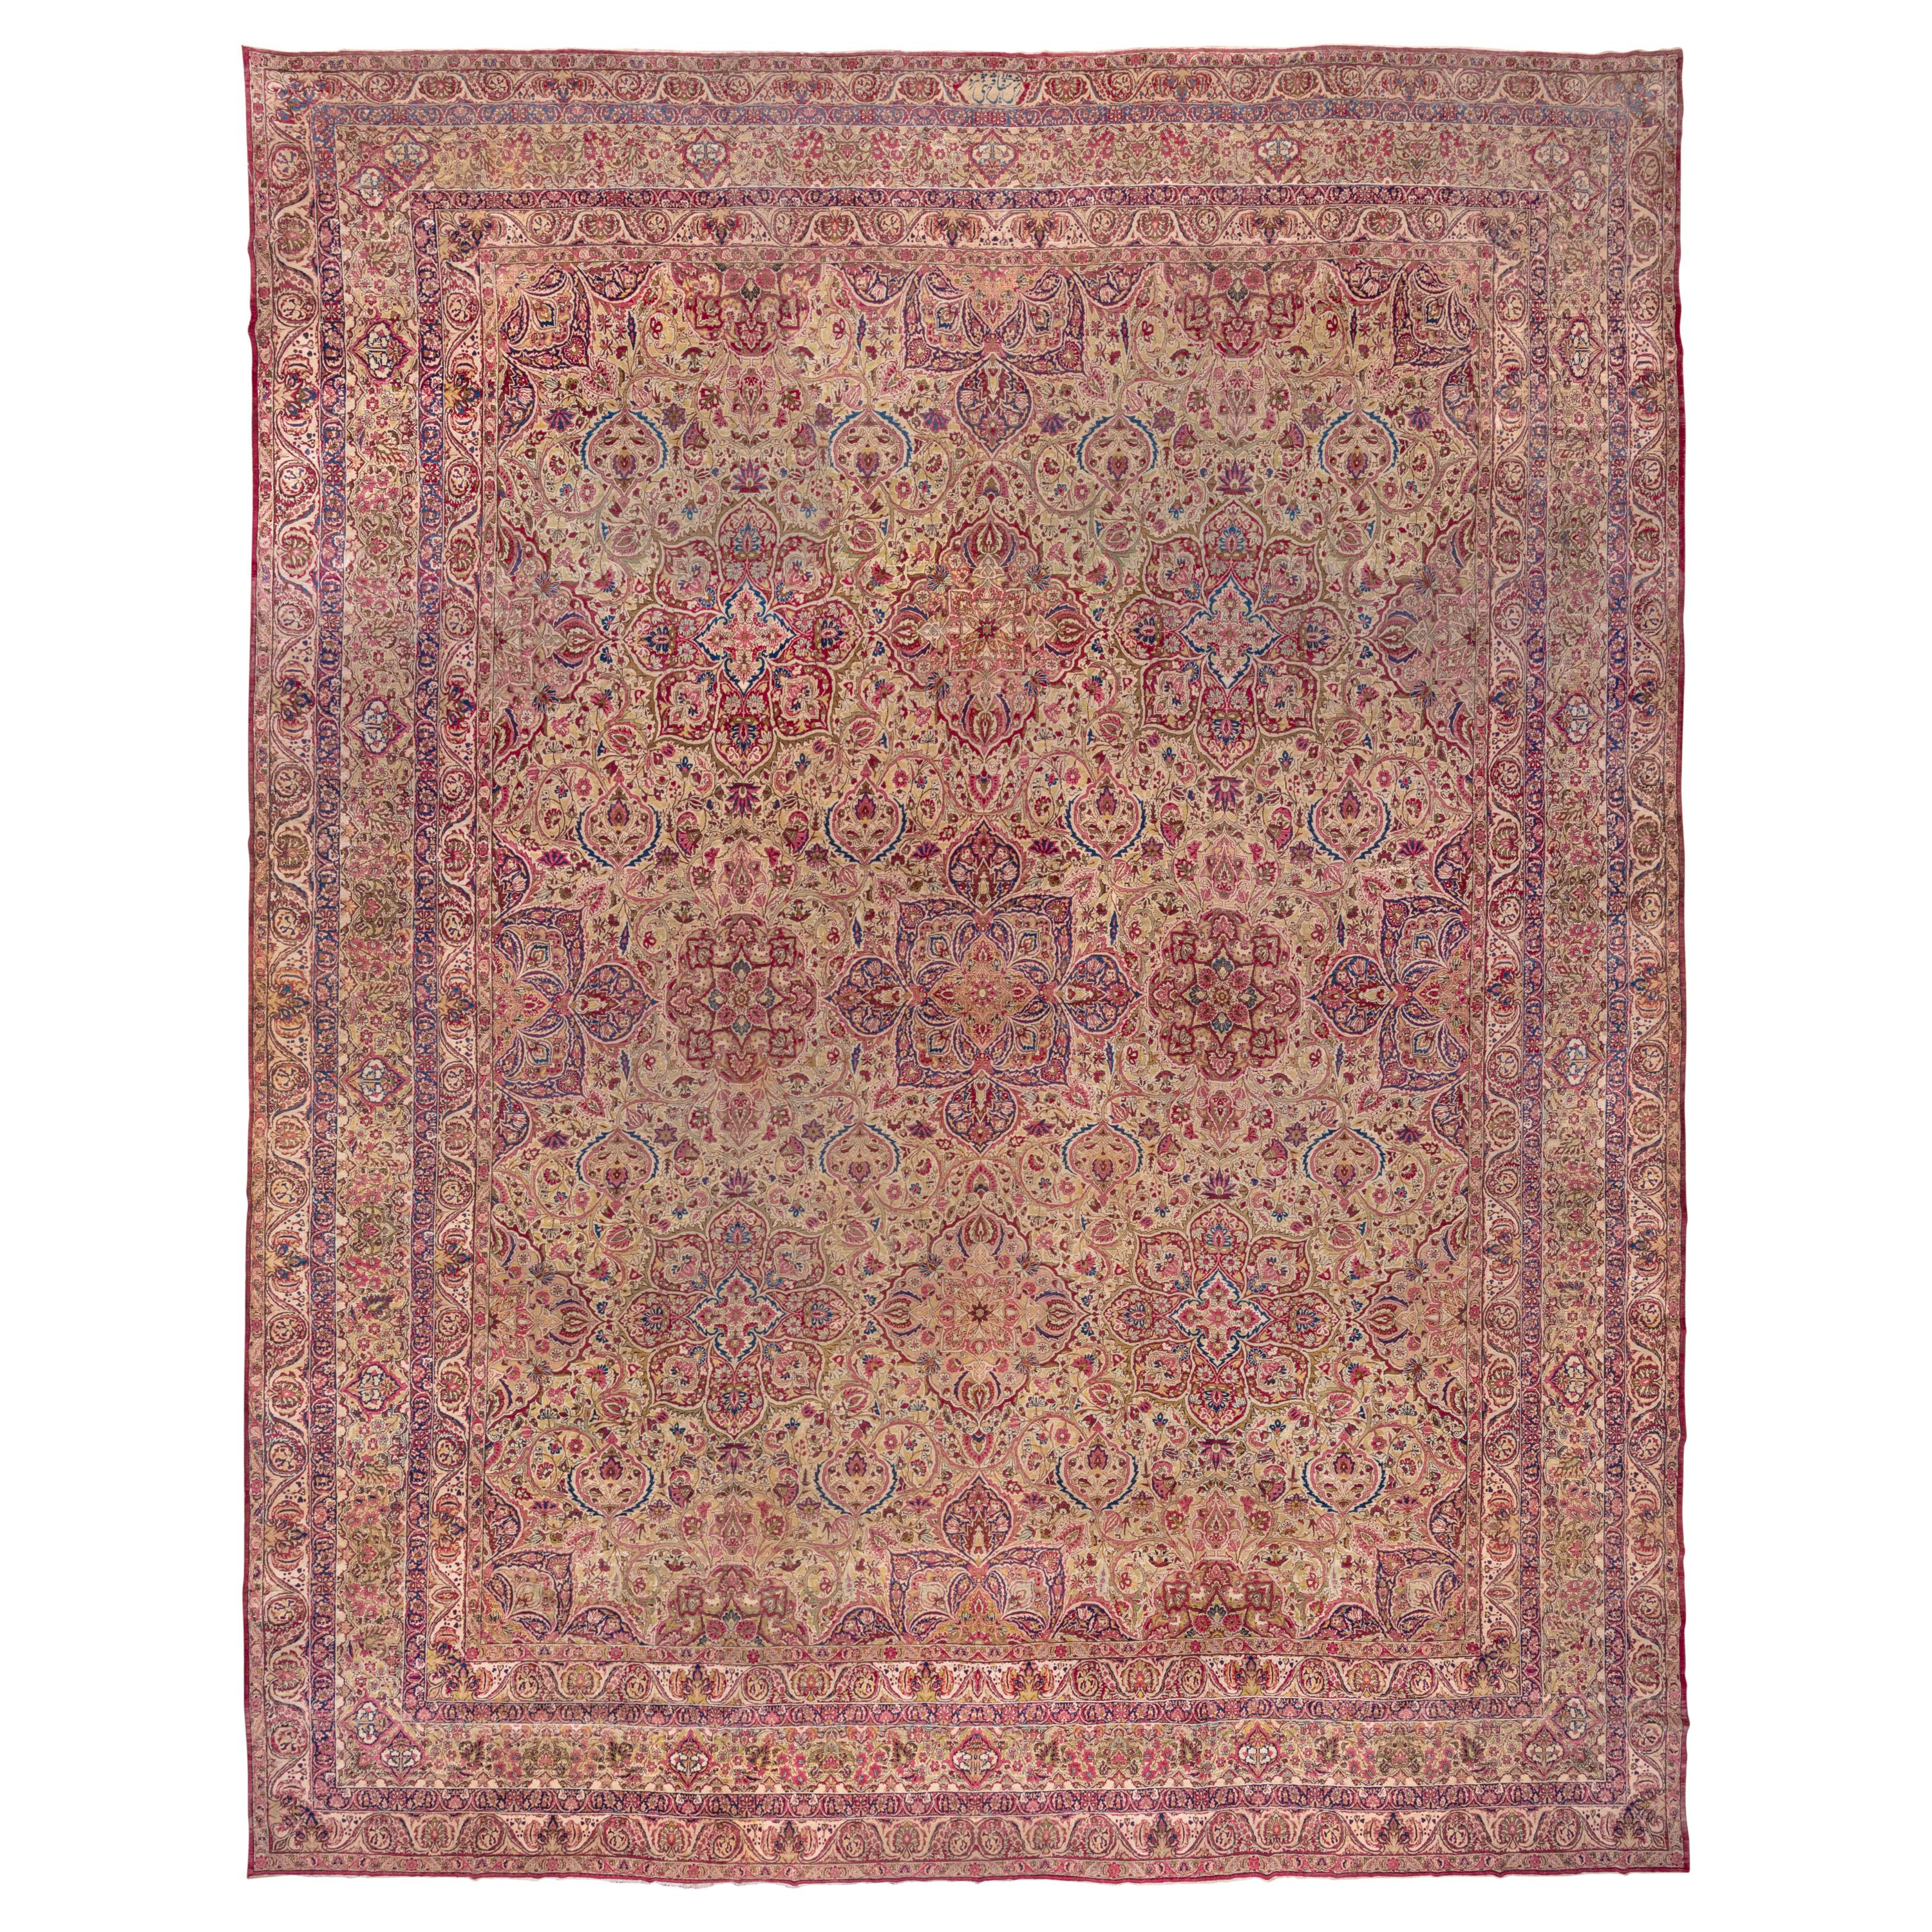 Amazing Antique Persian Lavar Kerman Carpet, Mansion Carpet, circa 1900s